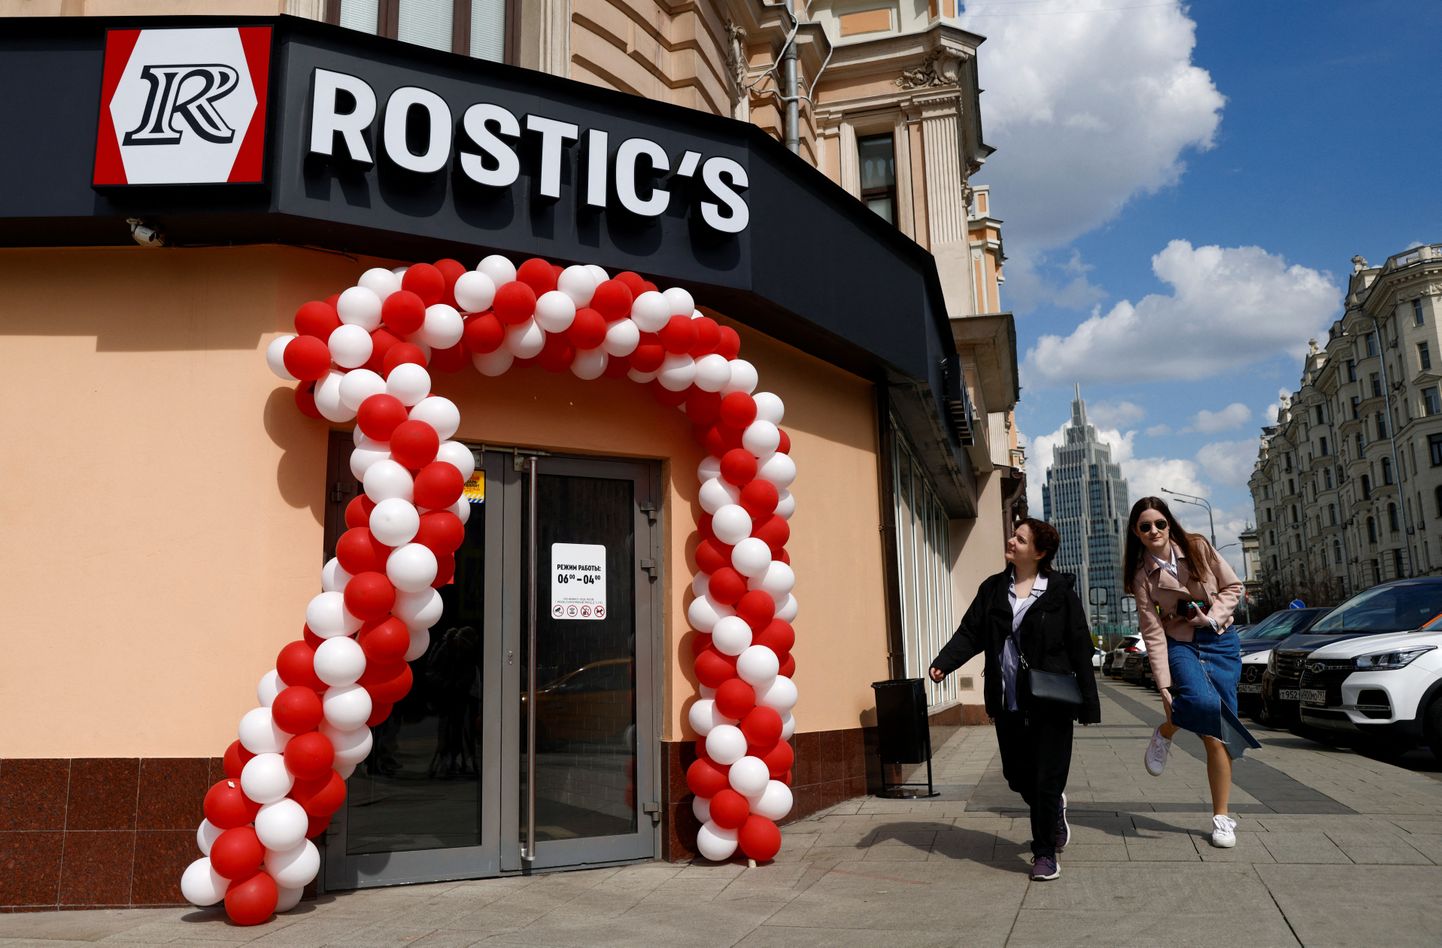 Endine KFC restoran, mis taasavati Moskvas Rostic's kaubamärgi all.